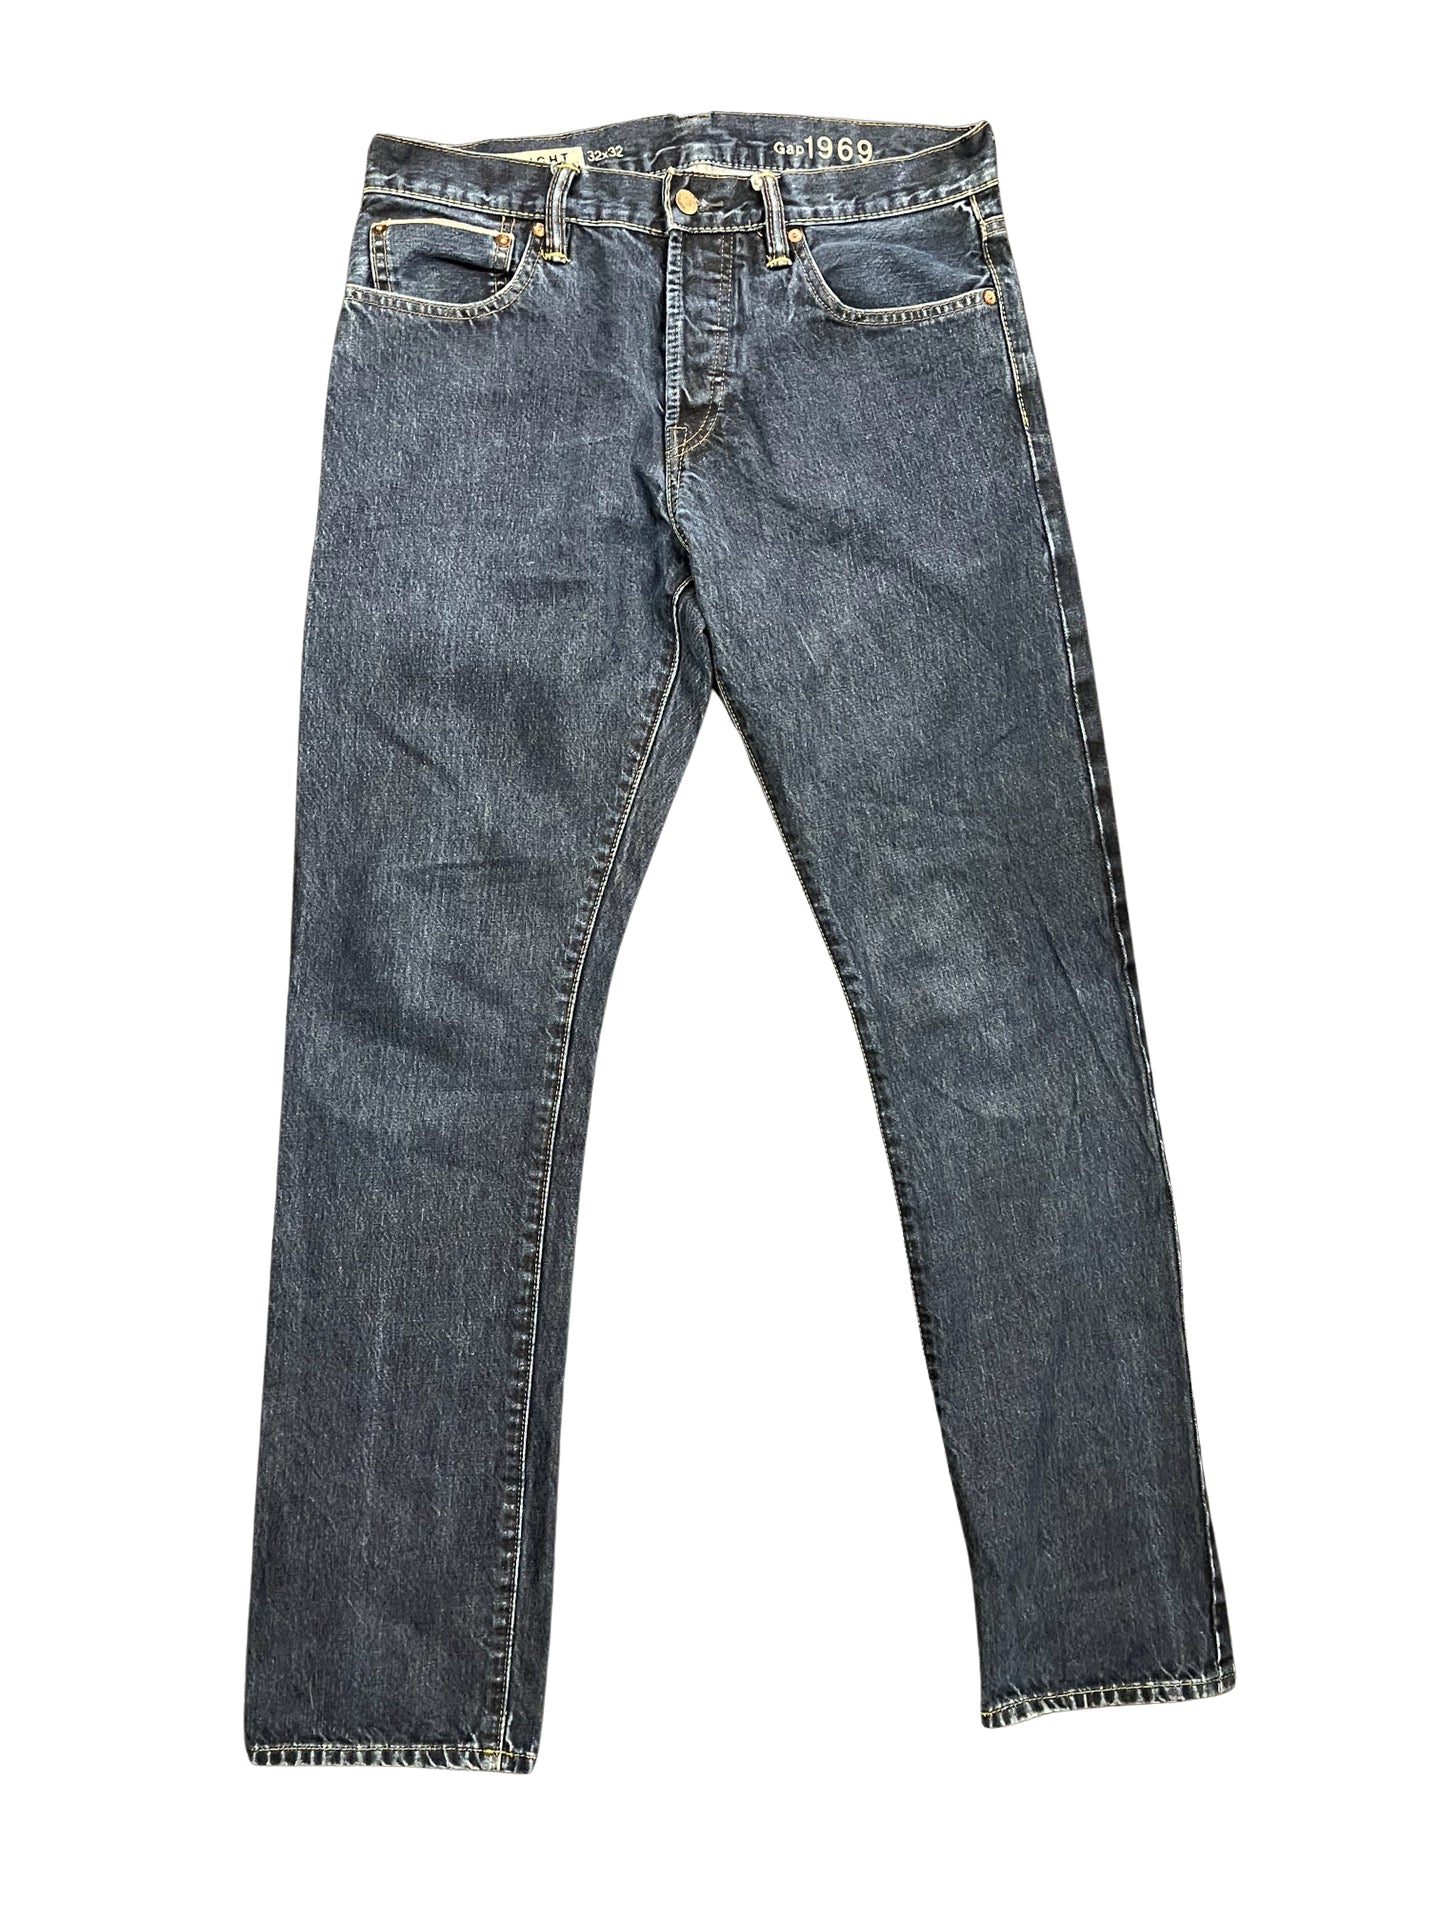 Size 32x32 Gap Jeans